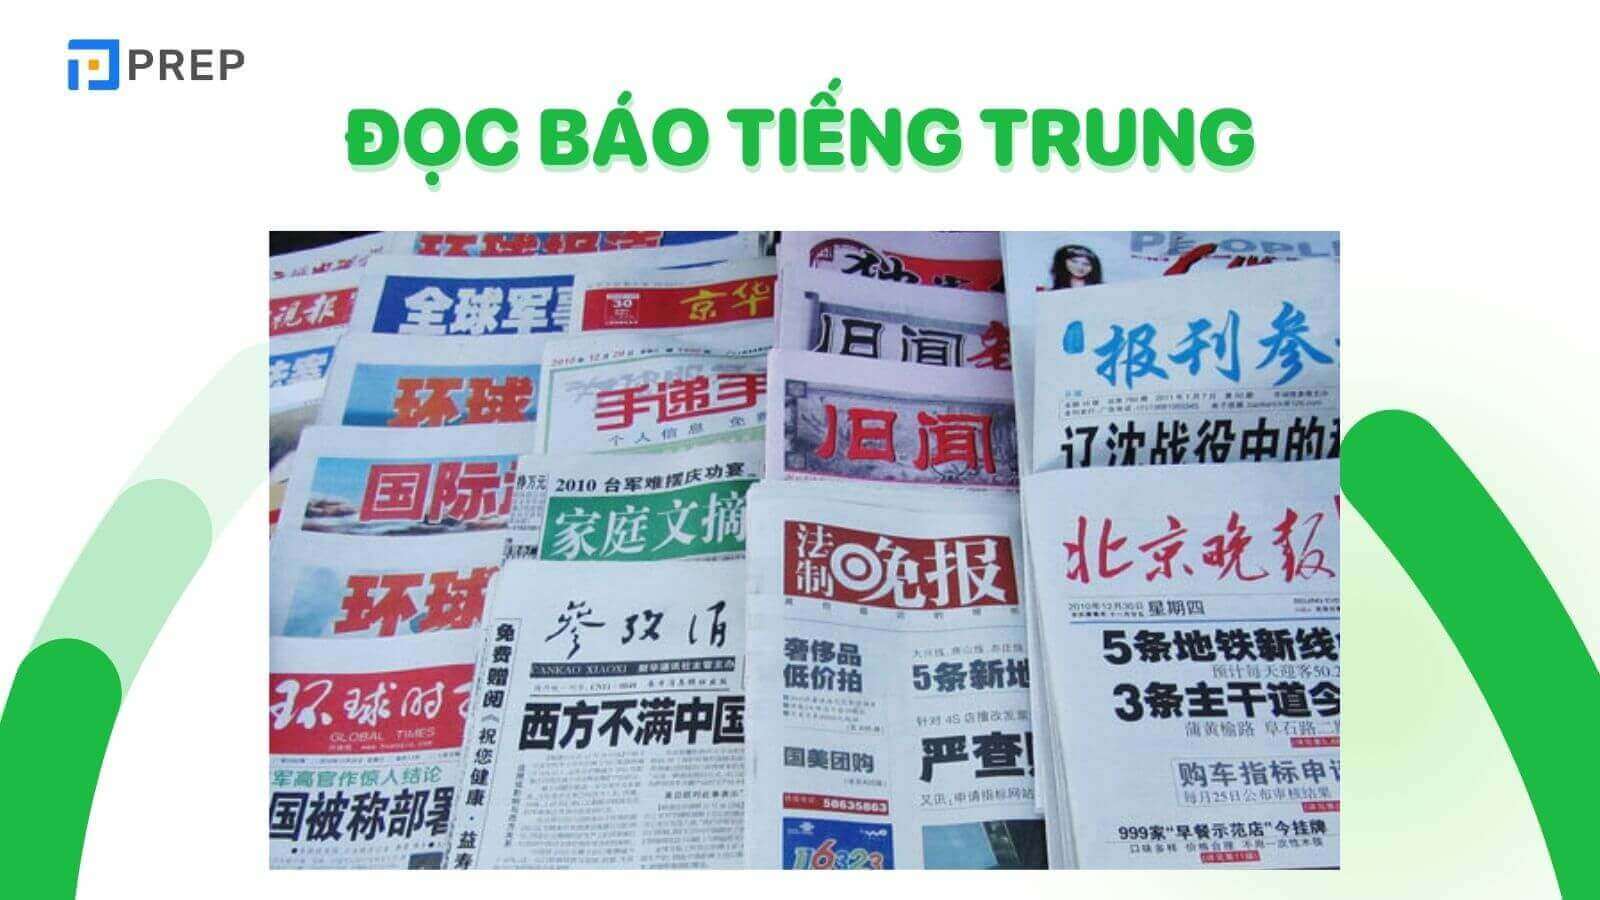 Đọc báo tiếng Trung mang đến rất nhiều lợi ích